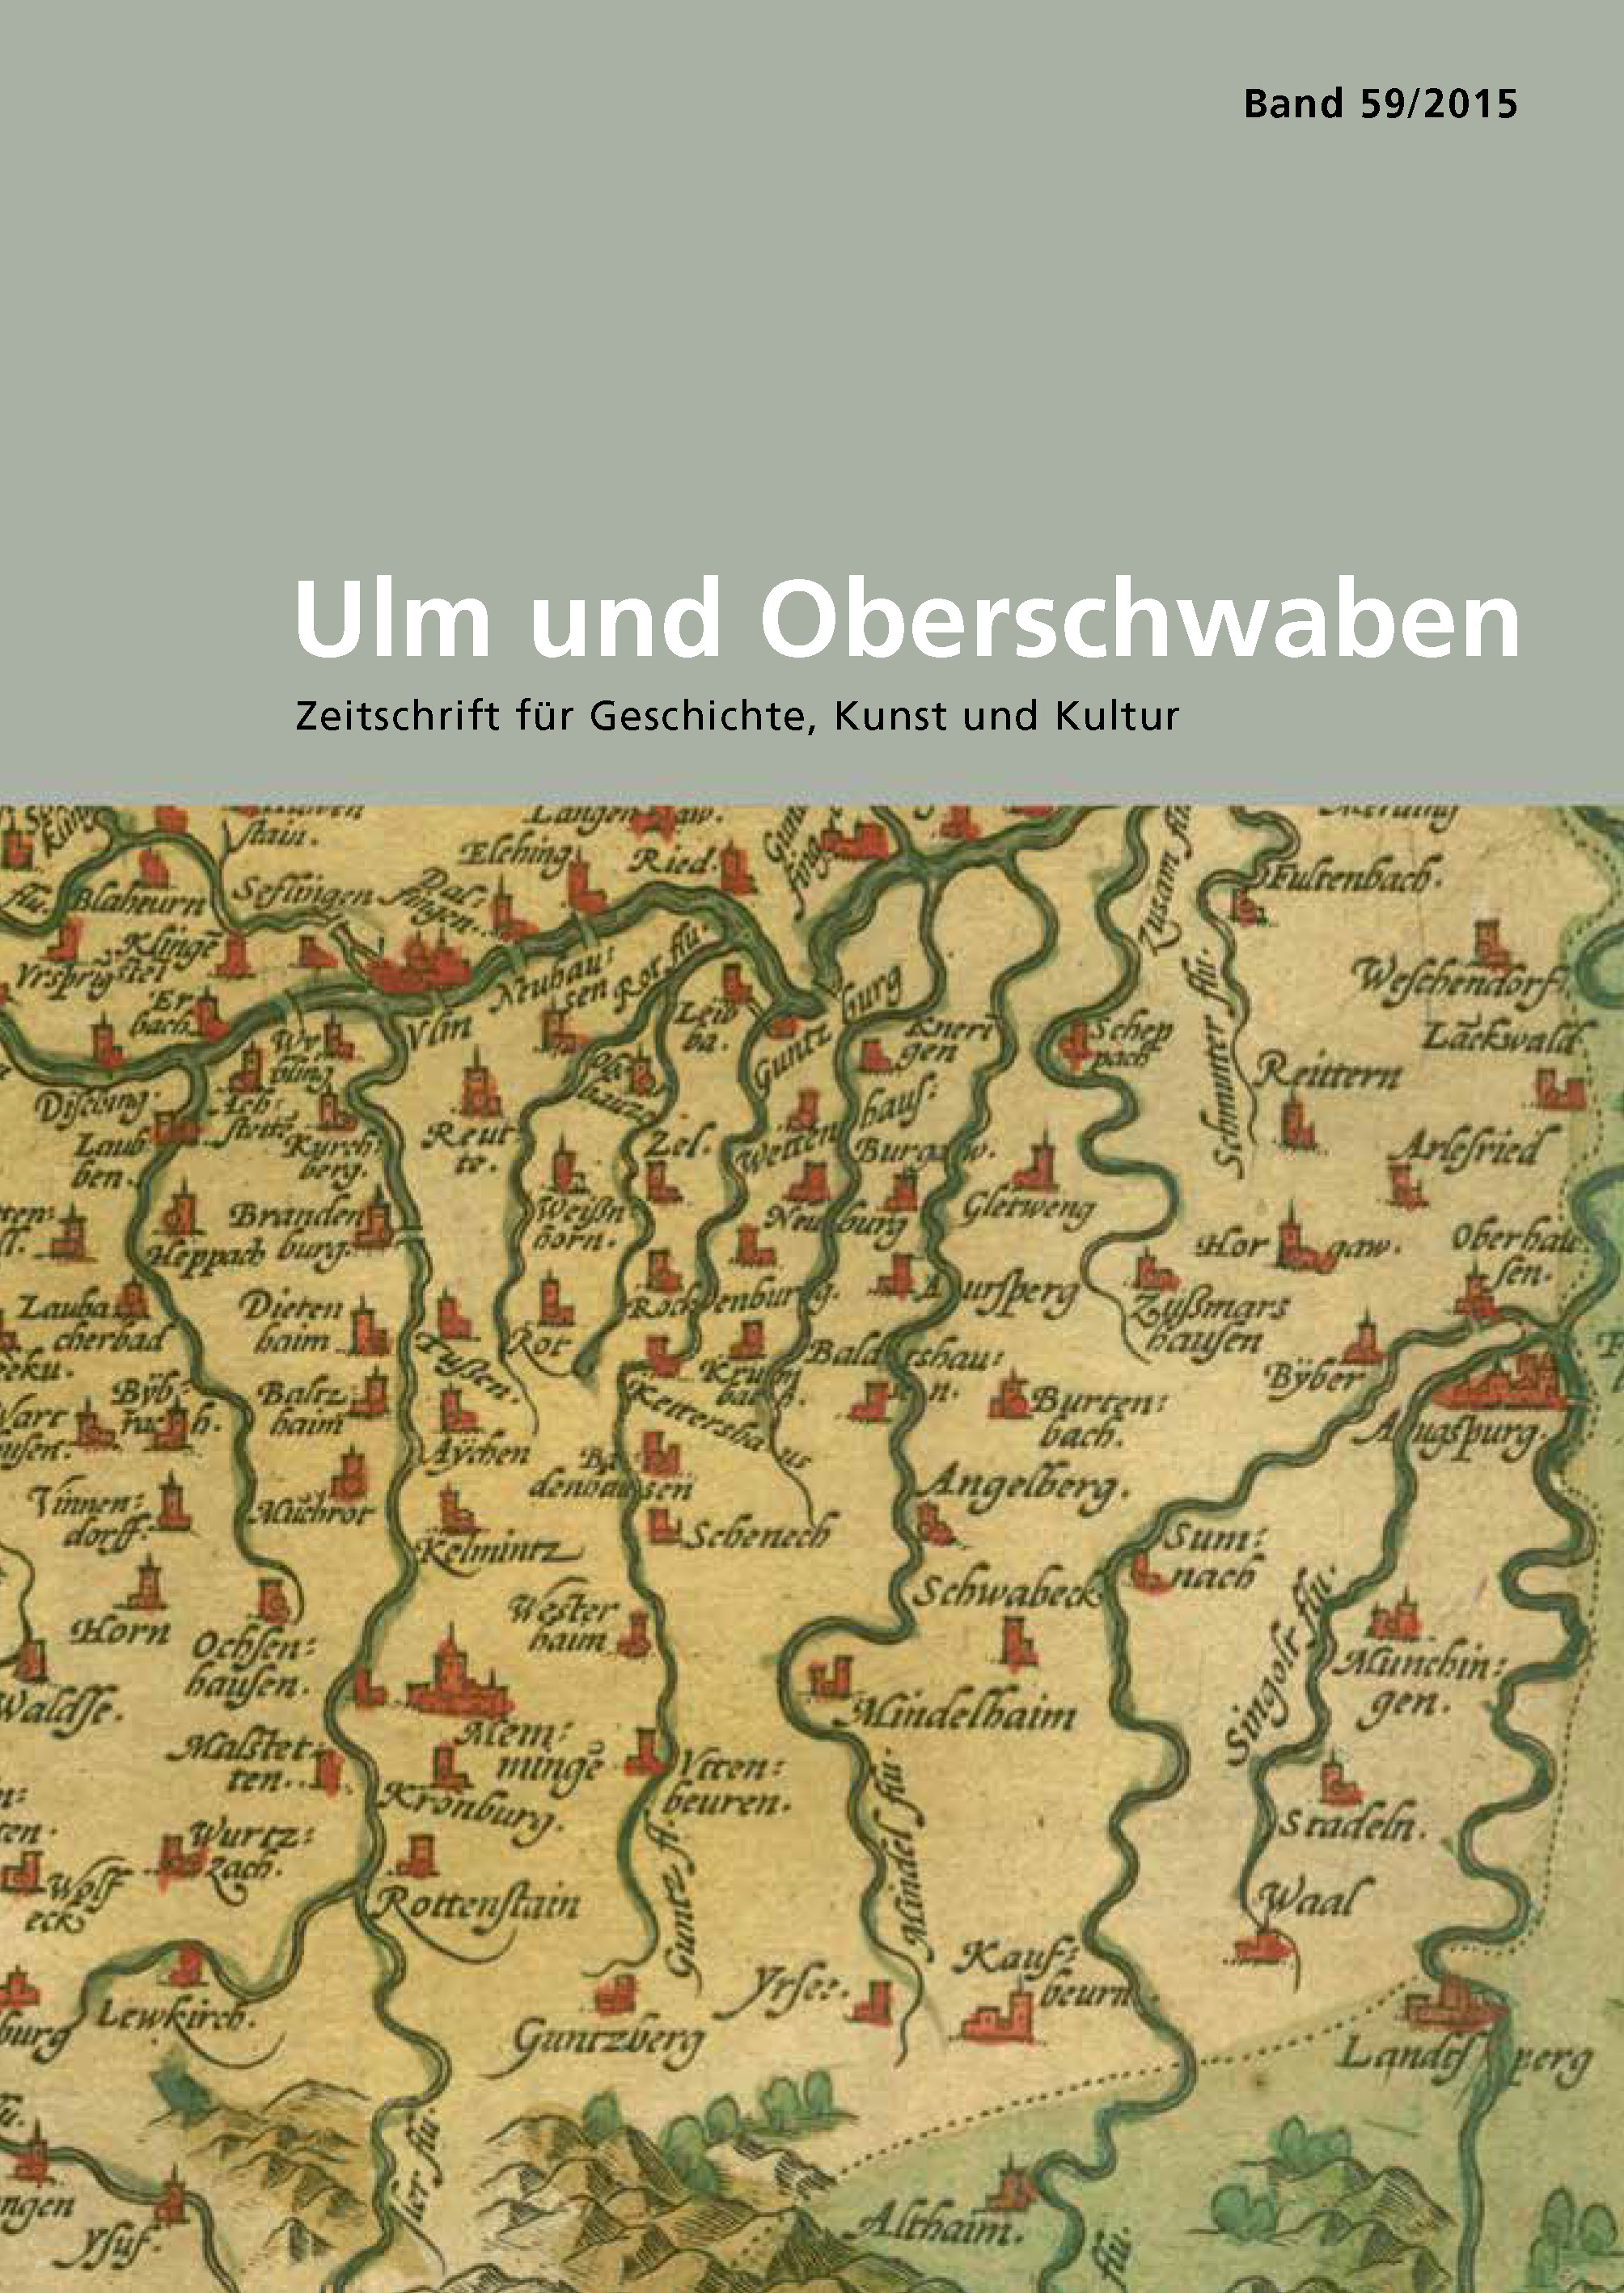                     Ansehen Bd. 59 (2015): Ulm und Oberschwaben
                